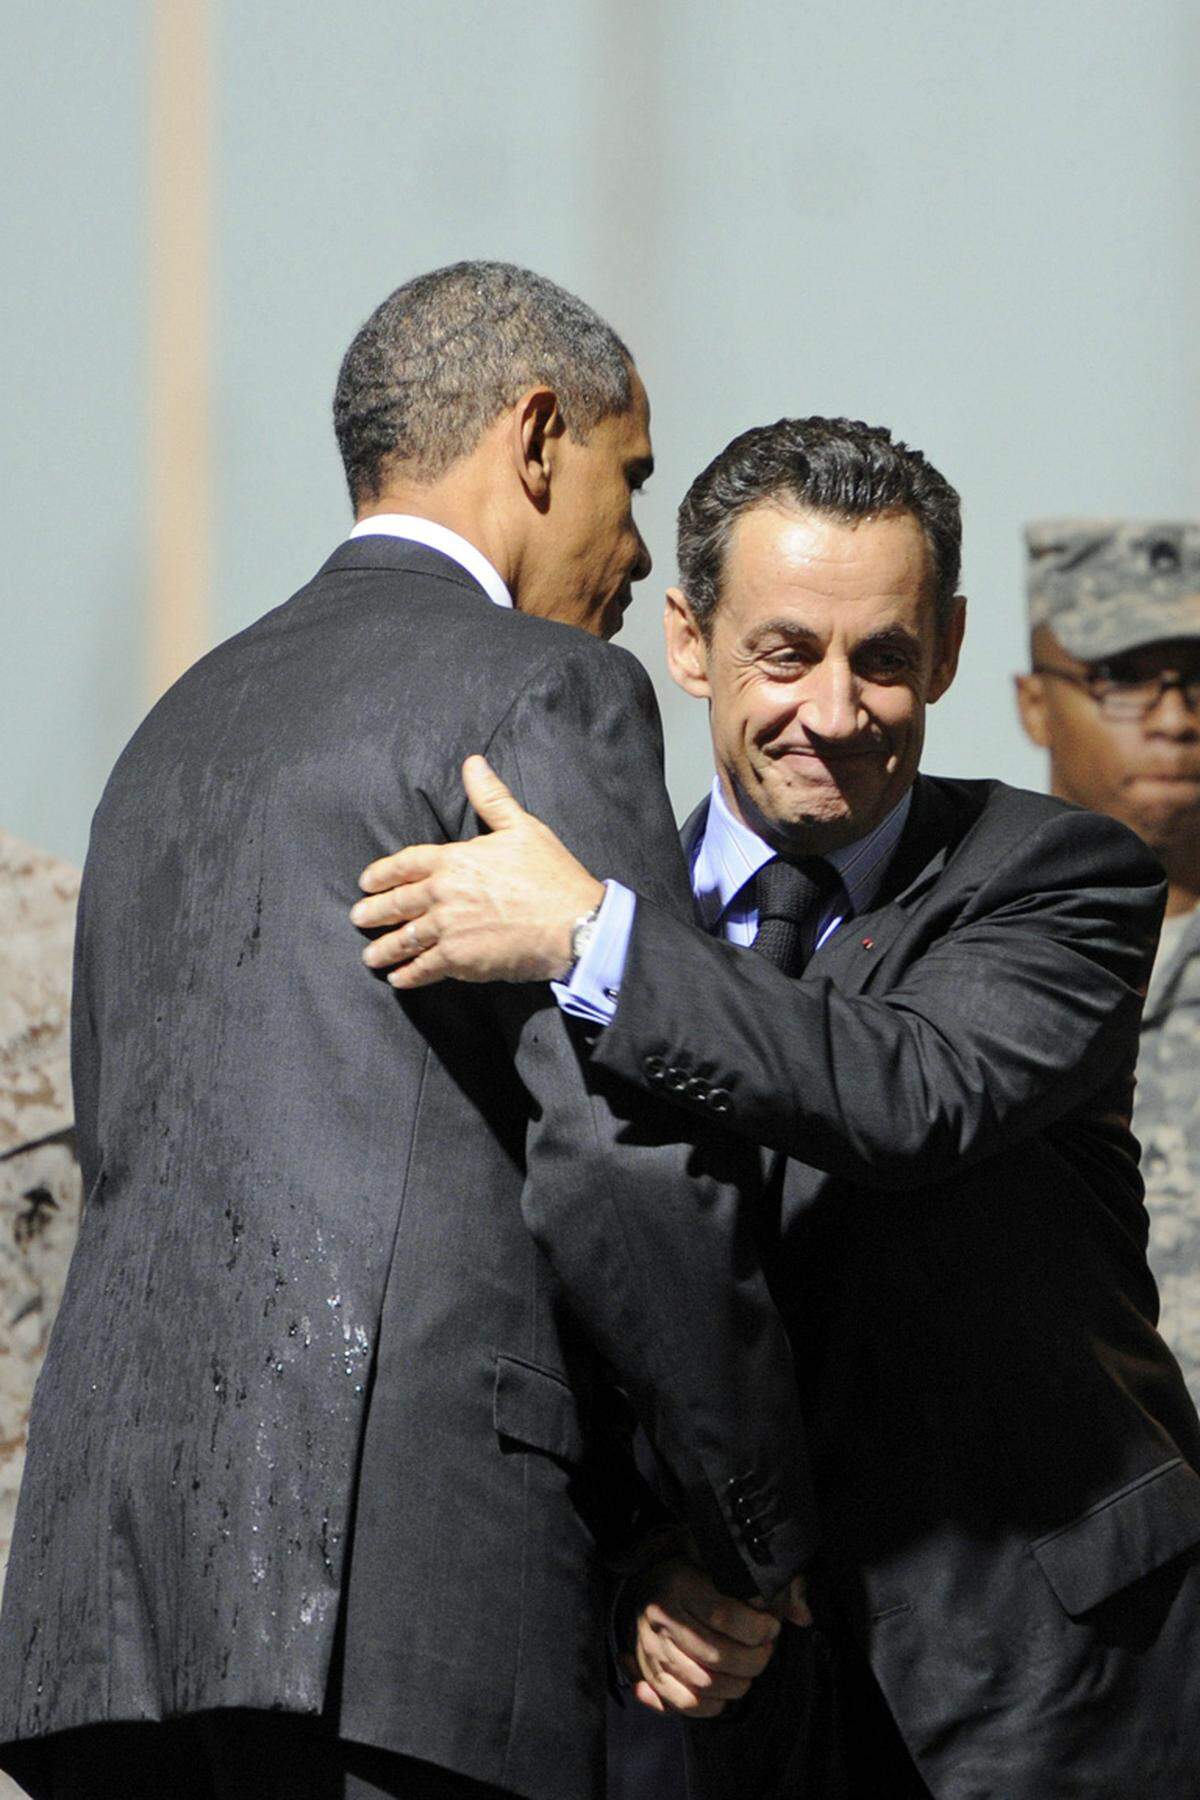 Frankreichs Präsident Nicolas Sarkozy hatte 2011 seine liebe Not mit der Technik. Er lästerte beim G-20-Gipfel in Cannes mit seinem US-Amtskollegen Barack Obama über Israels Regierungschef Netanjahu: "Ich kann ihn nicht mehr sehen, das ist ein Lügner." Darauf Obama: "Du magst ja genug haben von ihm, aber ich hab jeden Tag mit ihm zu tun!" Was sie nicht wussten: Die Mikrofone waren bereits an.